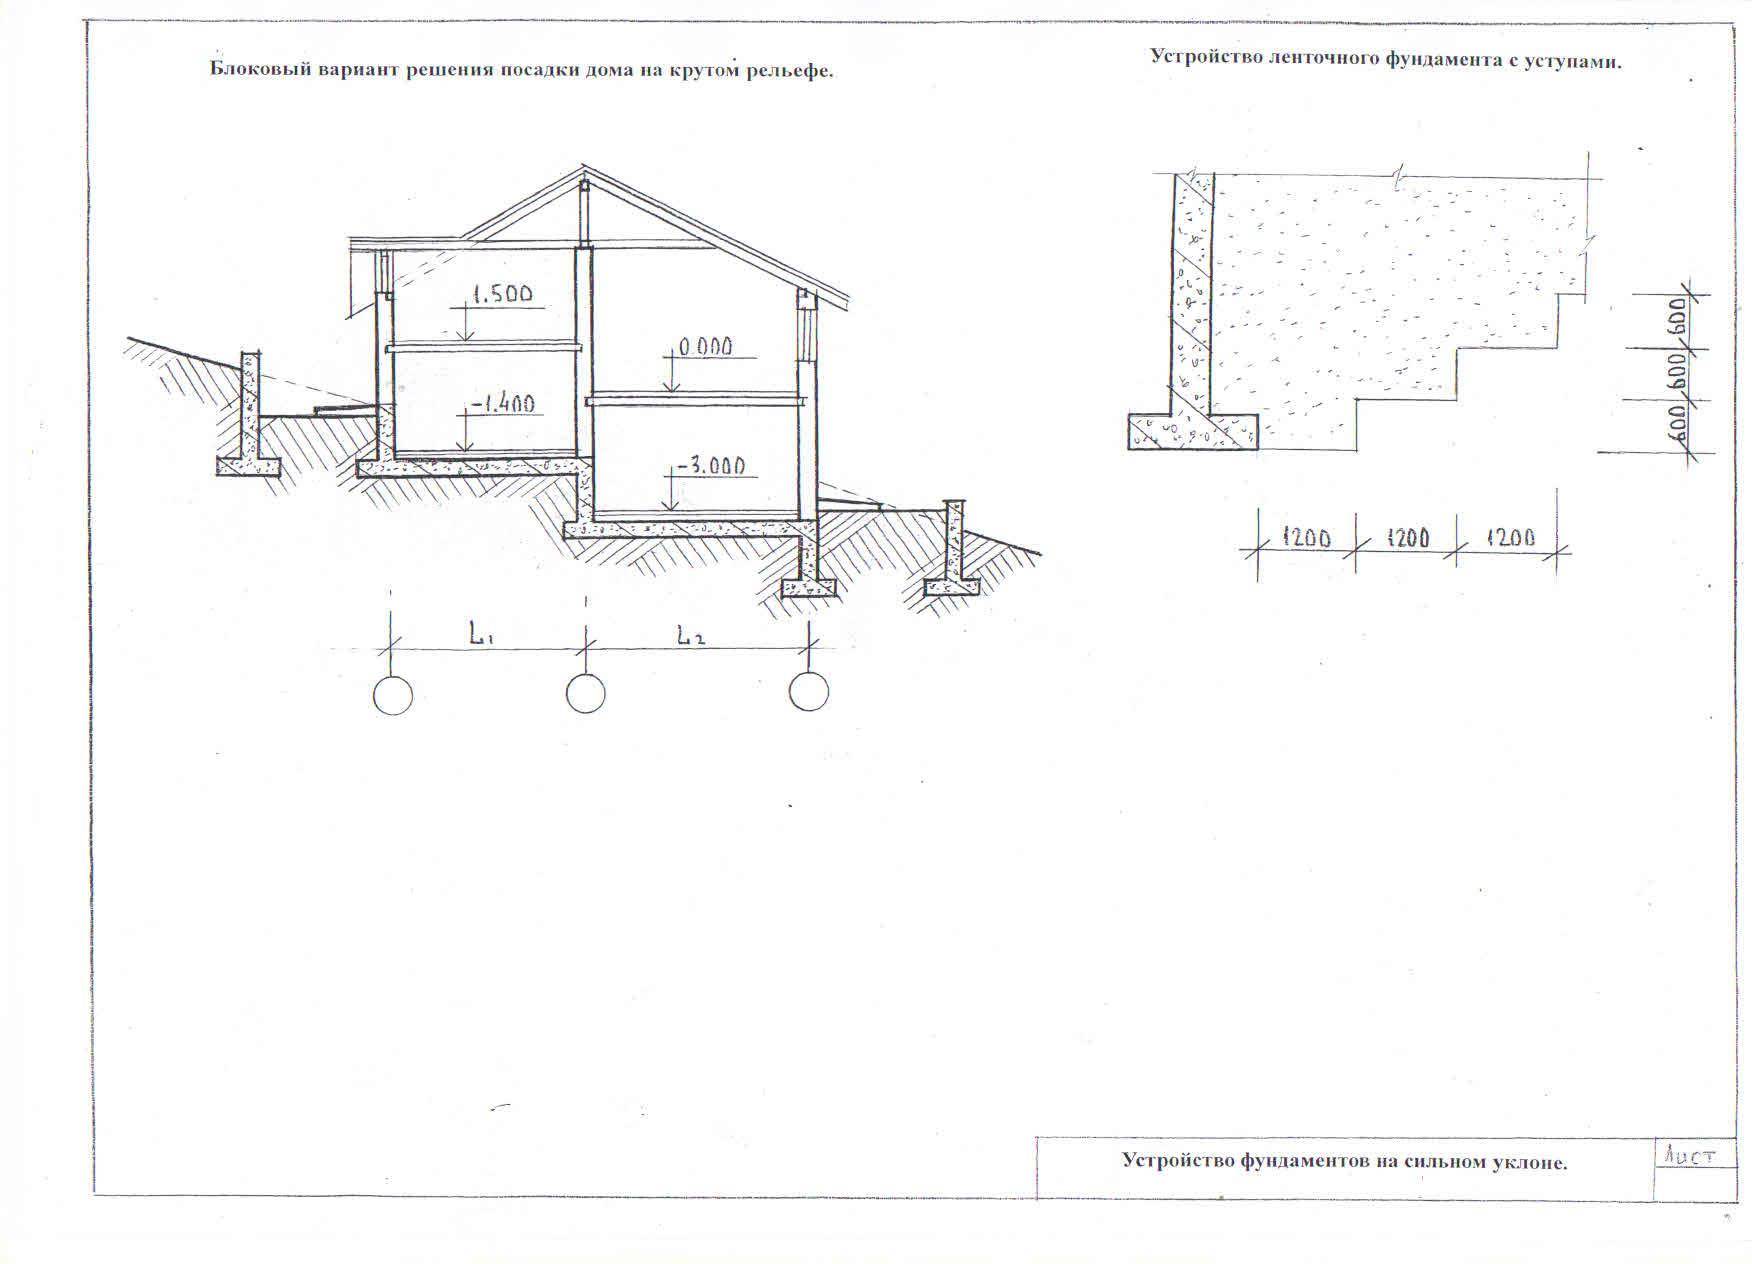 Как строить фундамент и дом на участке с уклоном? особенности проектов коттеджей на неровных участках